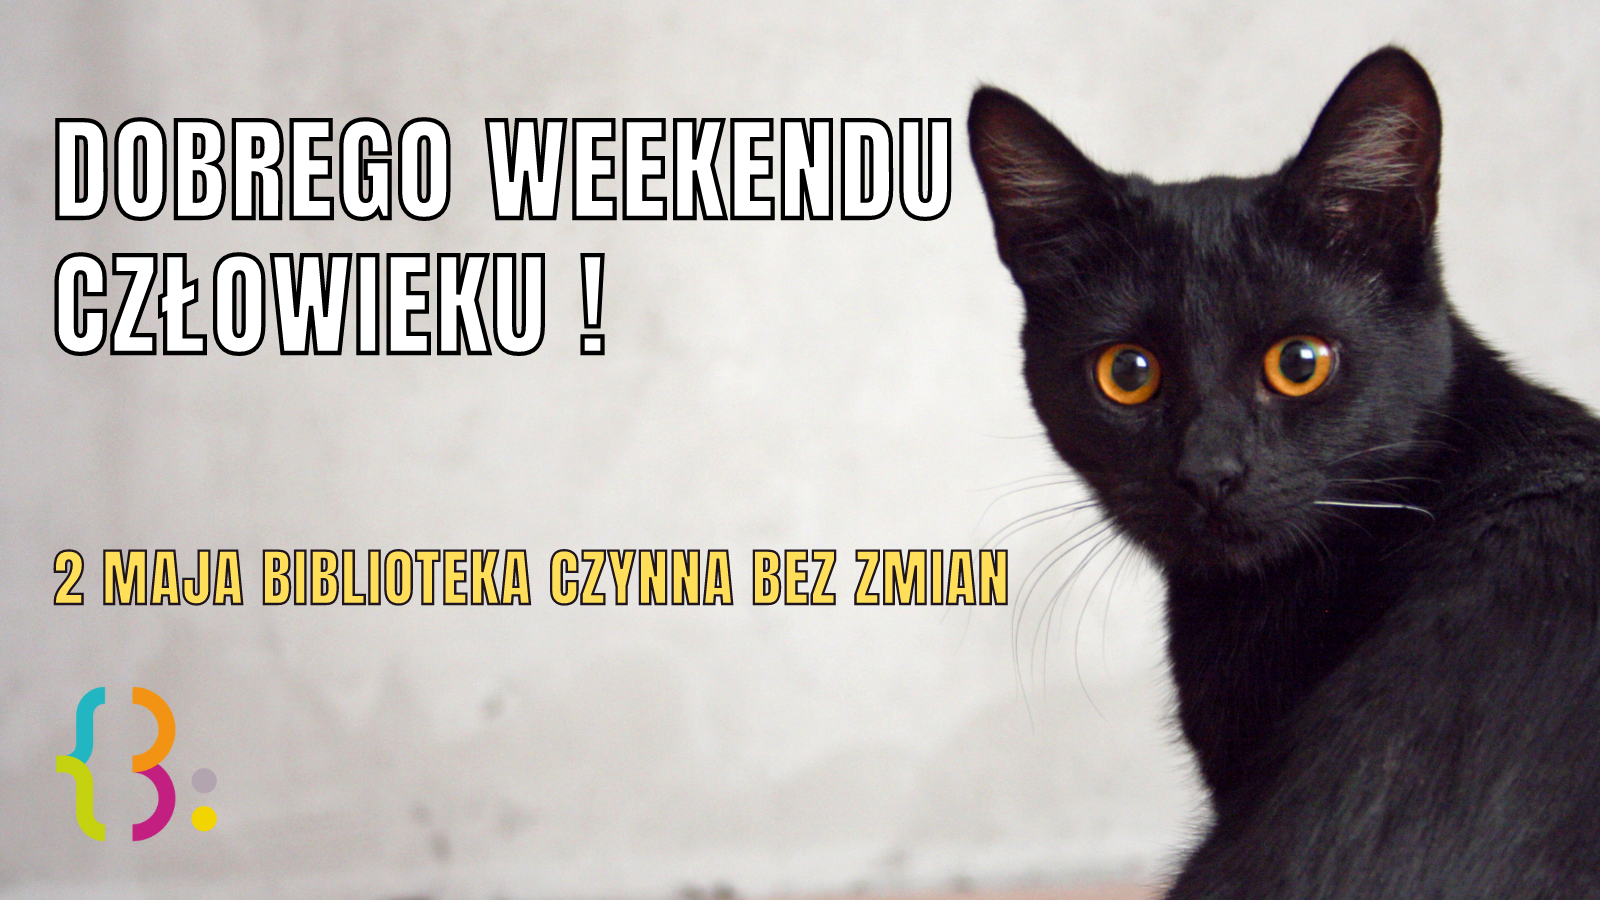 Zdjęcie czarnego kota, napis: dobrego weekendu człowieku! 2 maja biblioteka czynna bez zmian.